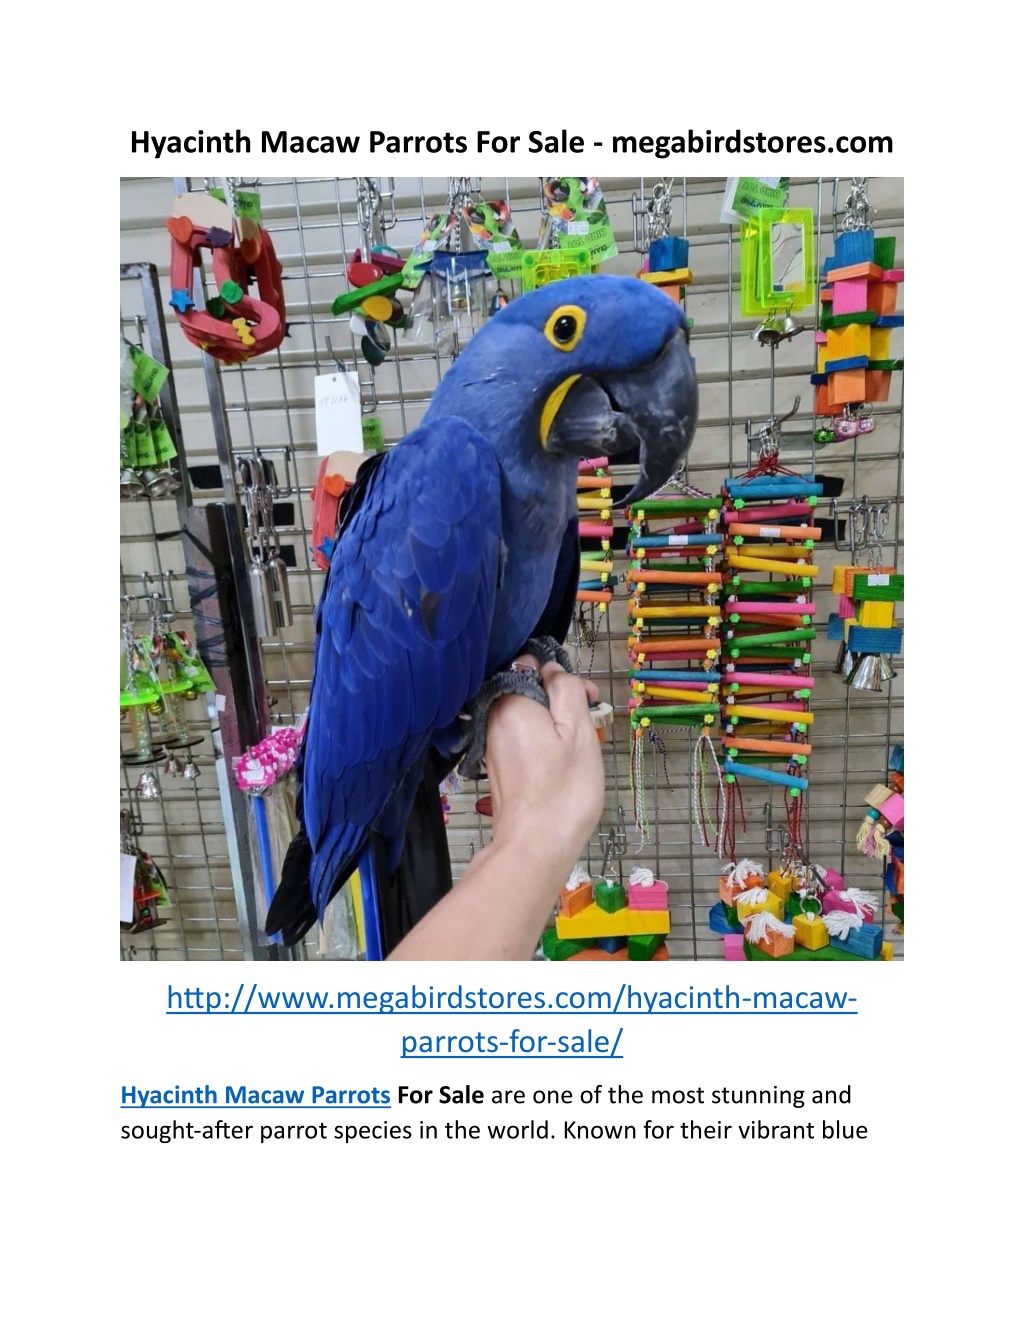 hyacinth macaw parrots for sale megabirdstores com l.w